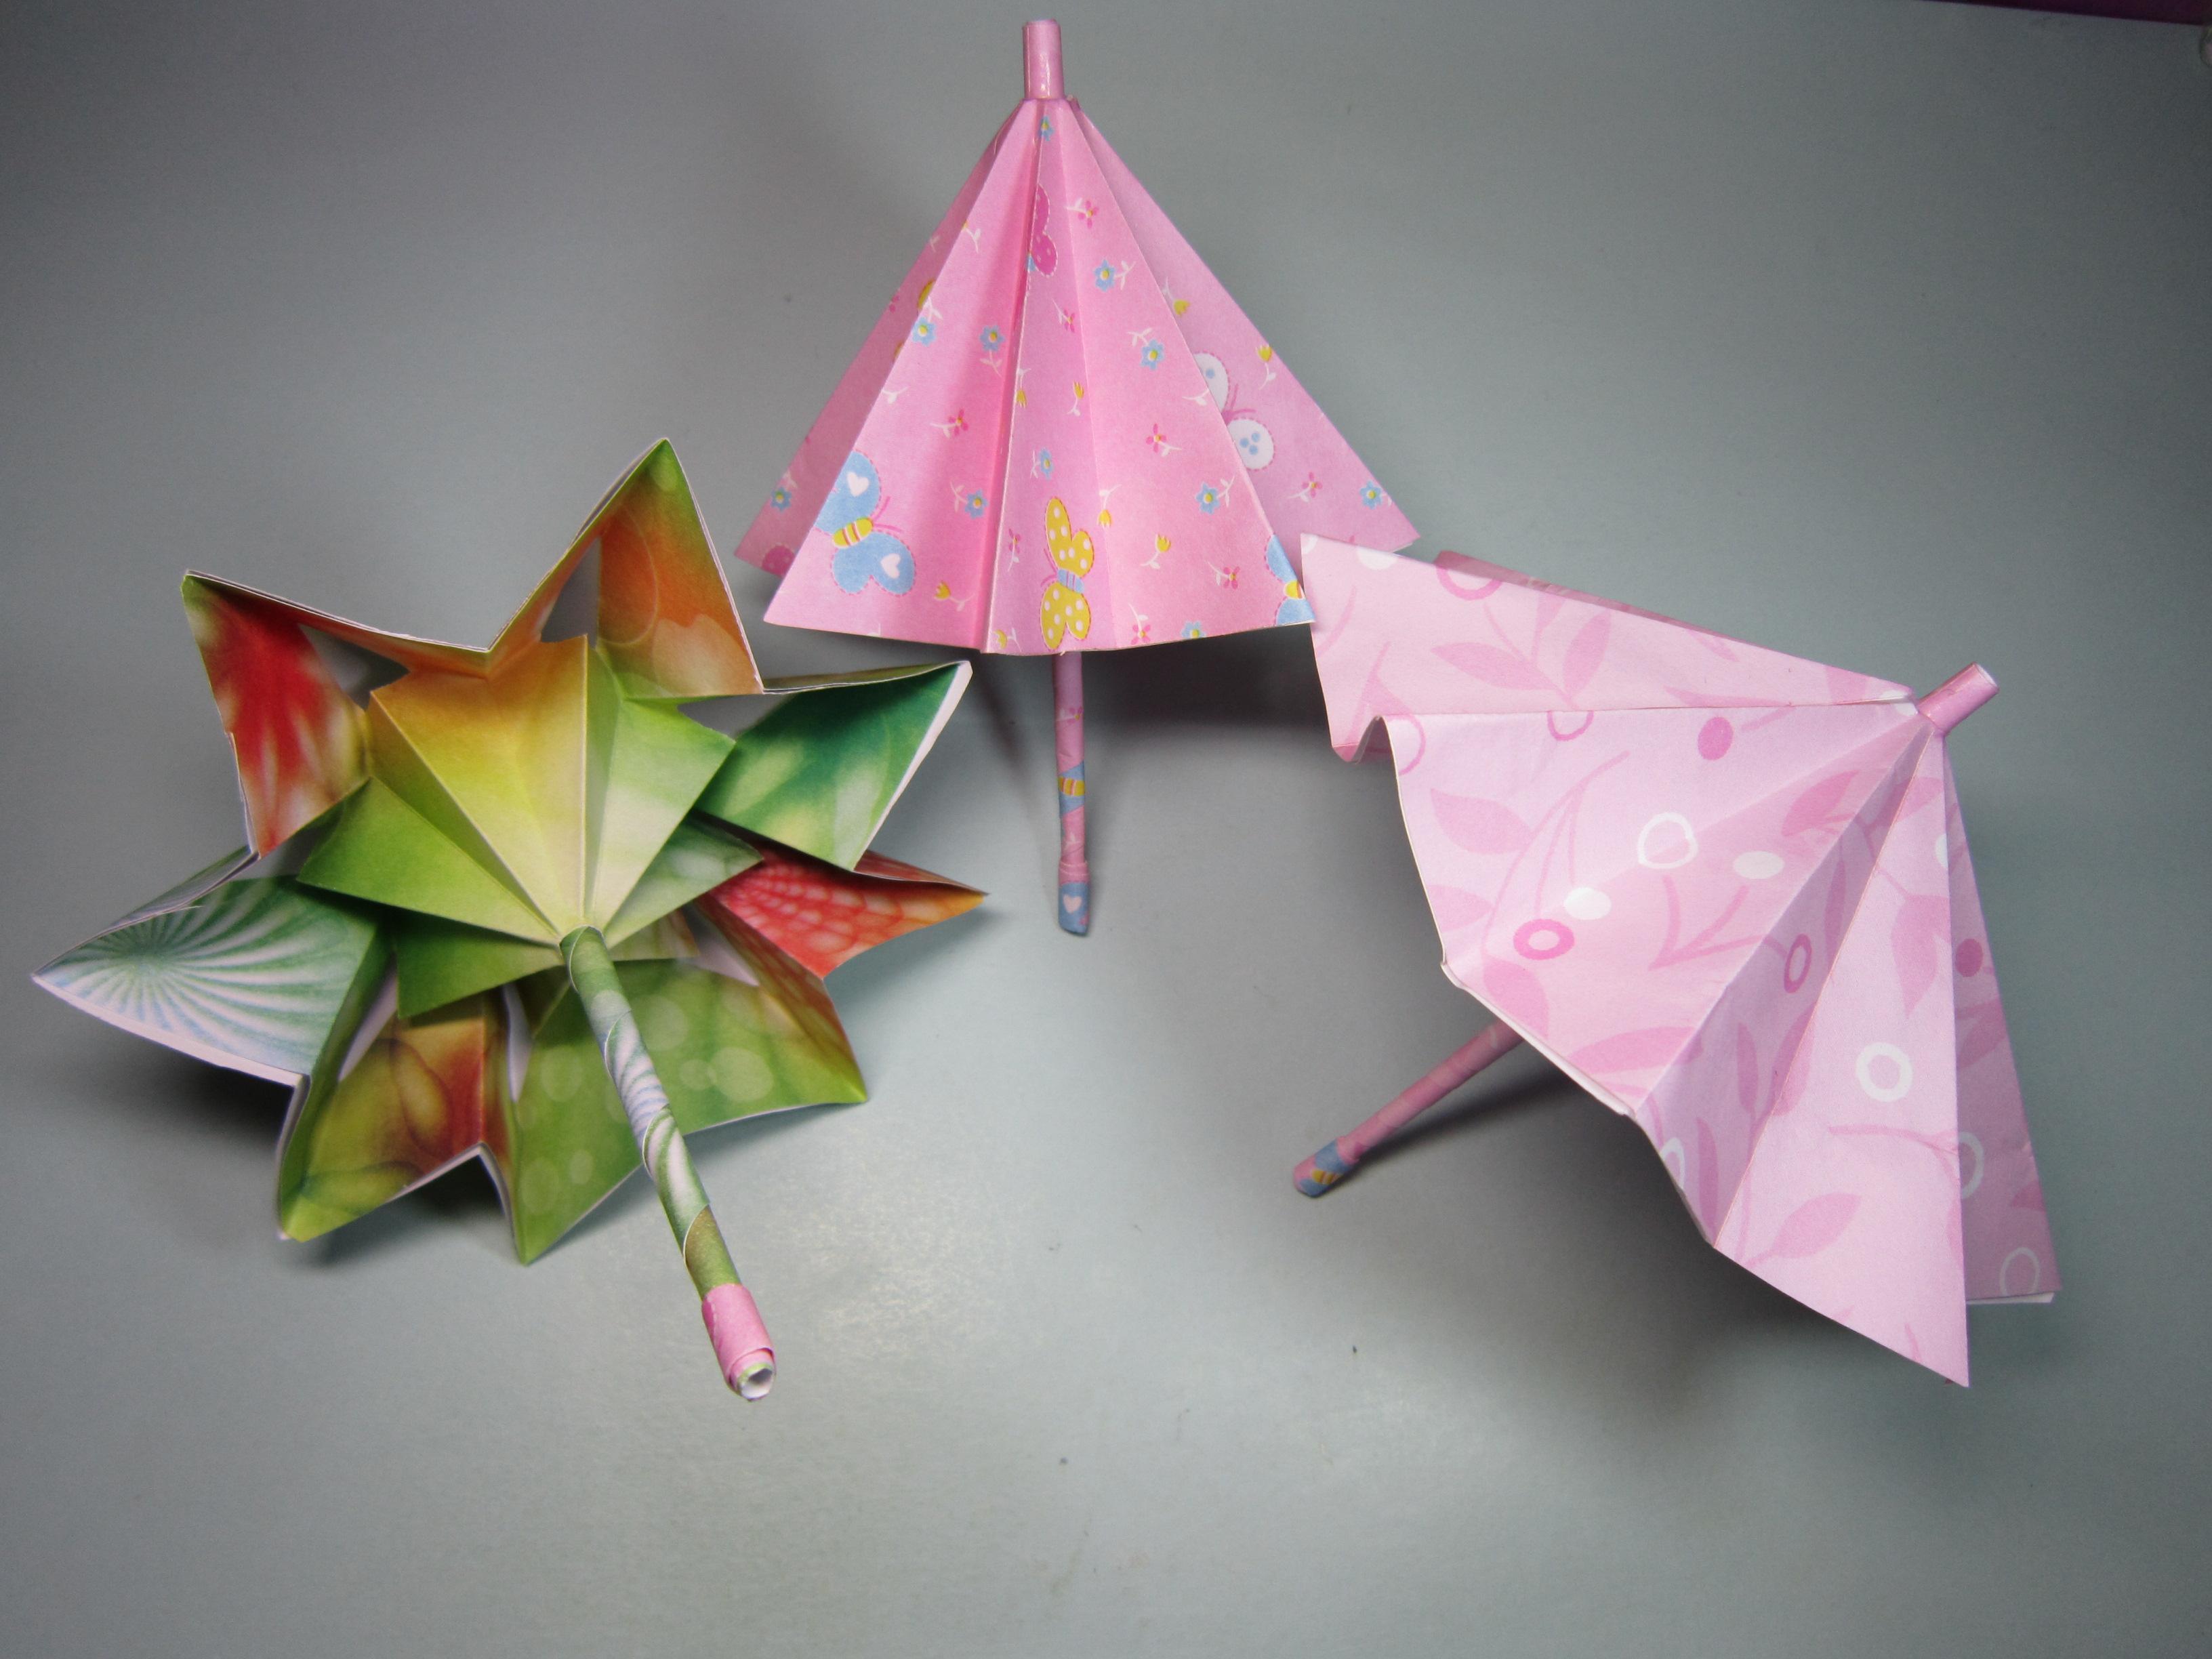 可收缩的雨伞折纸原来这么简单,几分钟就能学会,小雨伞的折法